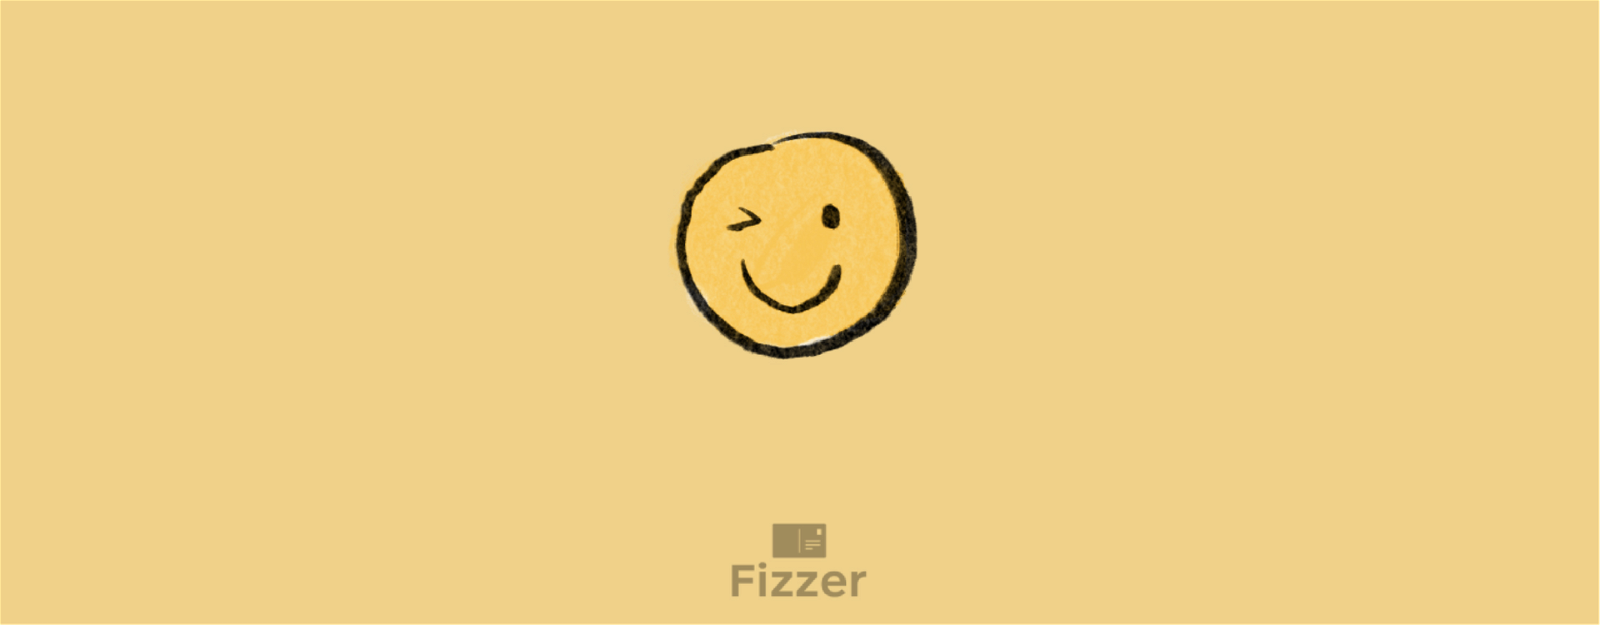 Fizzer Fr We Can Finally Meet Milled